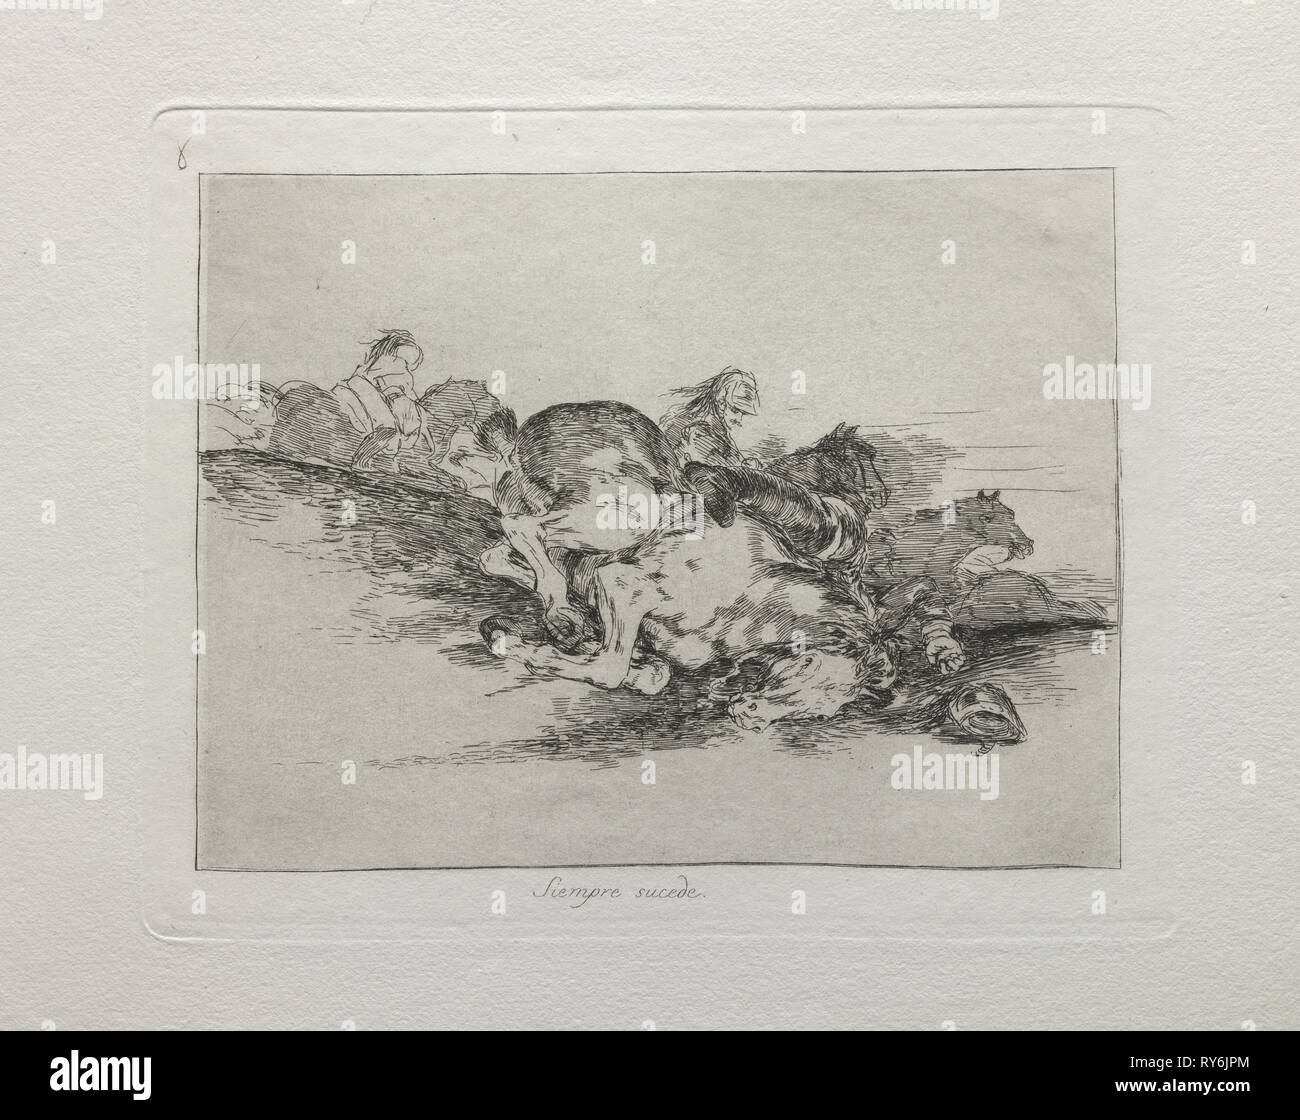 Disastri della guerra: succede sempre, 1810-1820. Francisco de Goya (Spagnolo, 1746-1828). Incisione e puntasecca; foglio: 24,1 x 33,3 cm (9 1/2 x 13 1/8 in.); immagine: 14,7 x 19,5 cm (5 13/16 x 7 11/16 in.); platemark: 17,5 x 21,8 cm (6 7/8 x 8 9/16 in Foto Stock